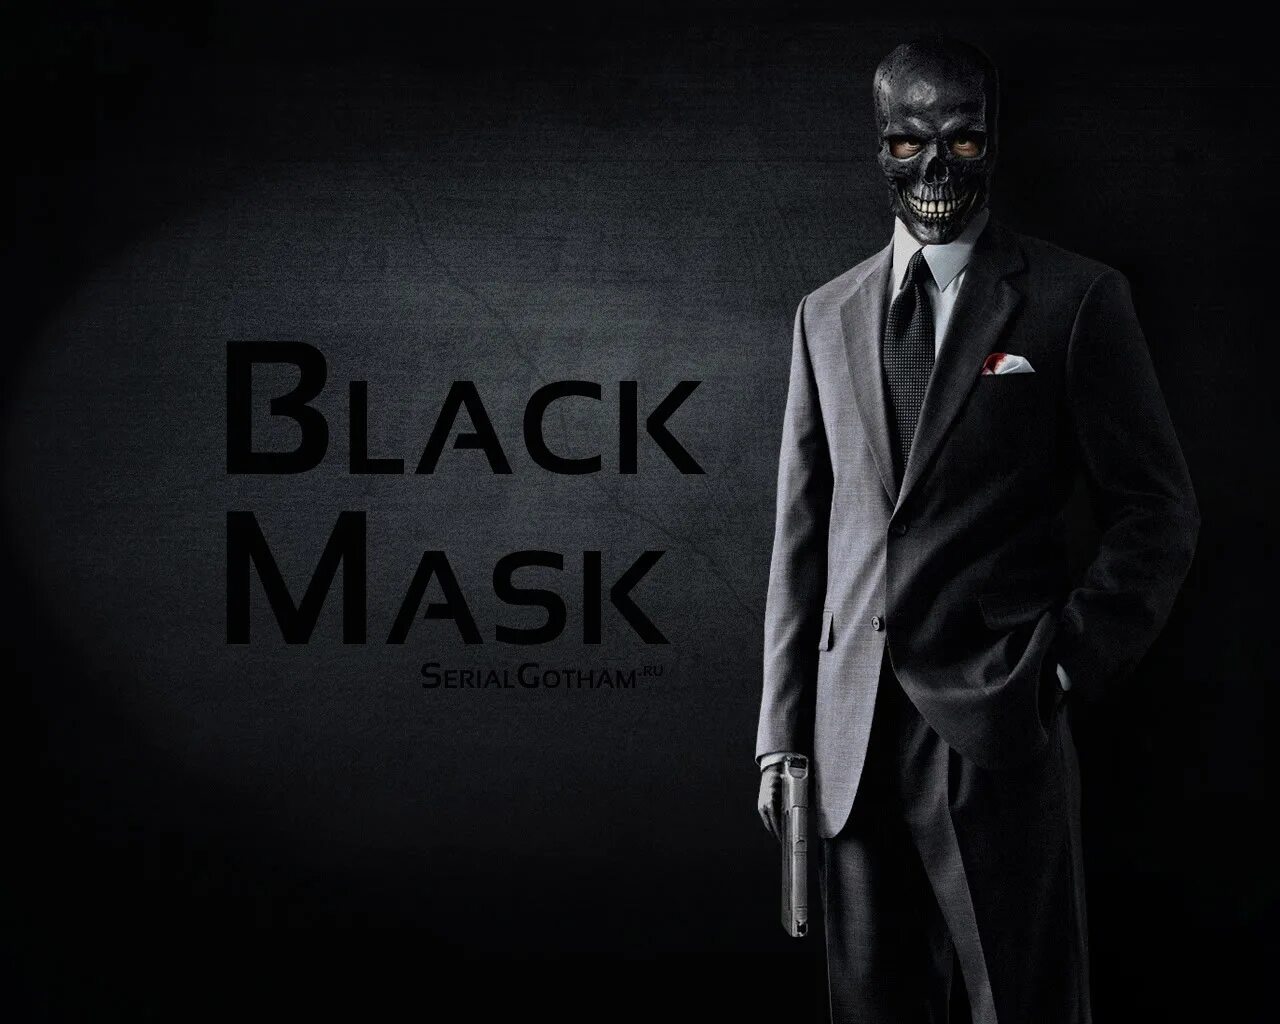 Mask suit. «Человек в чёрном костюме», 2004 Кинг.